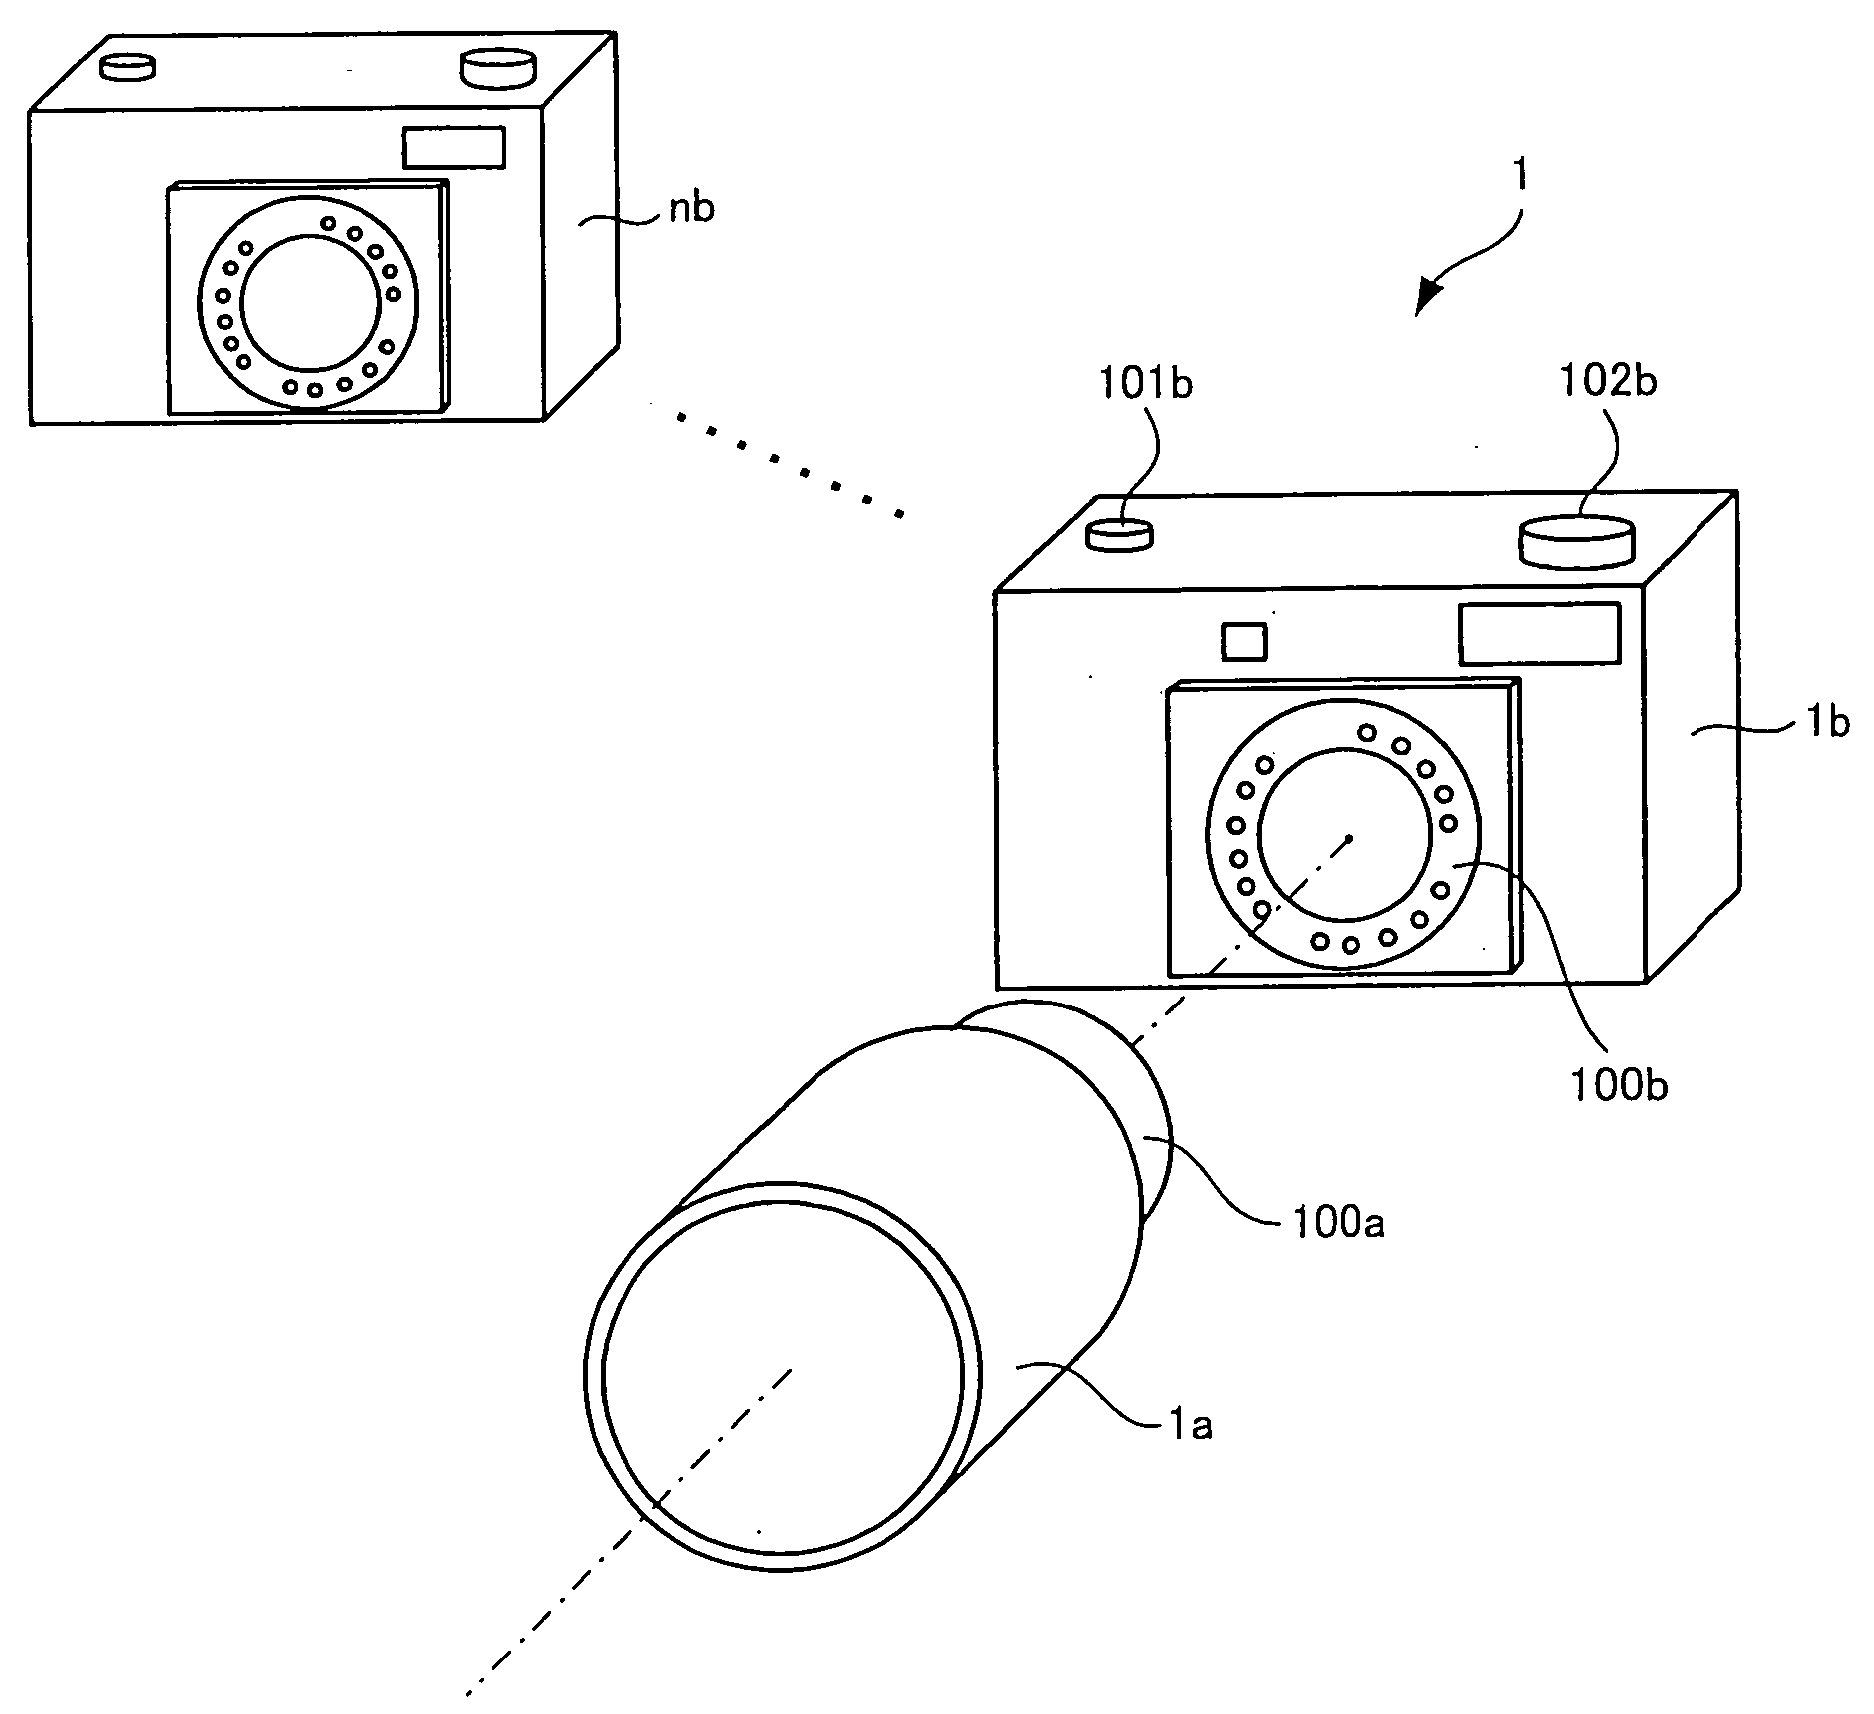 Camera system